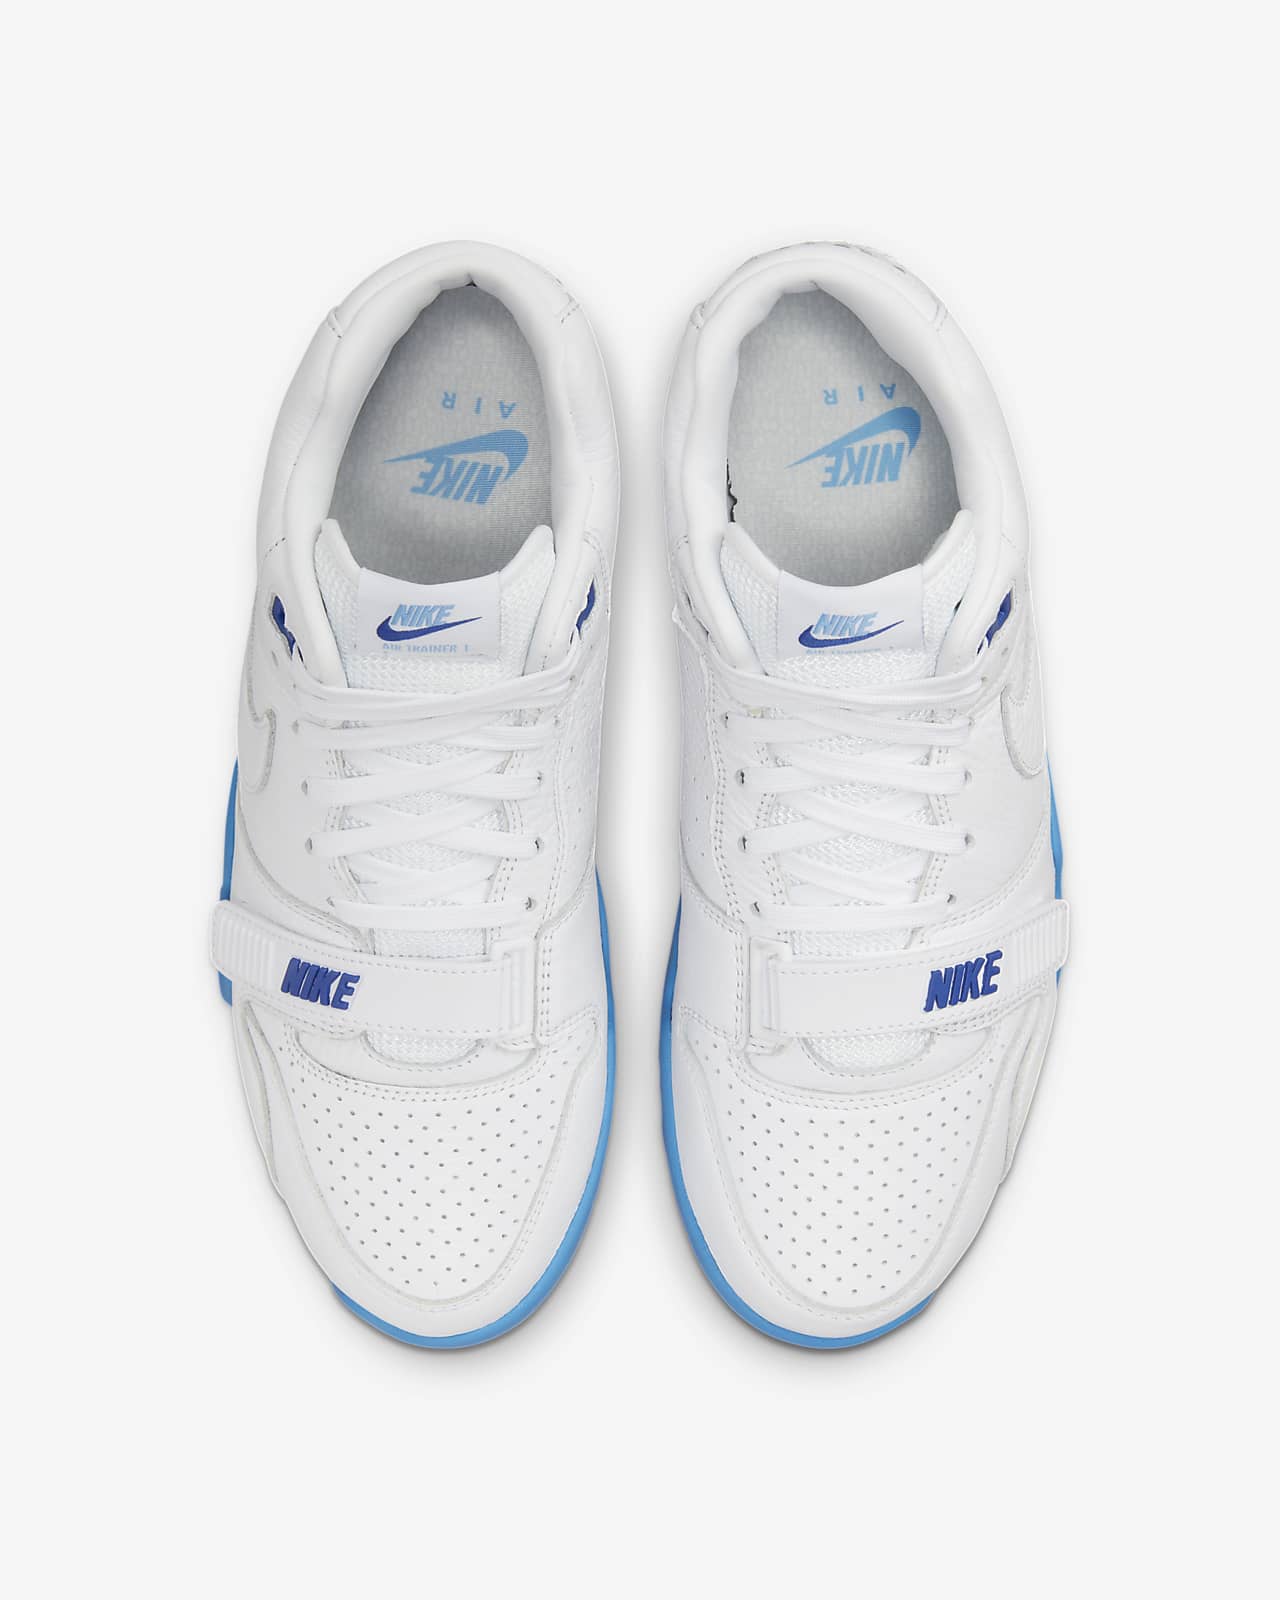 Nike Air Trainer 1 Men's Shoes. LU